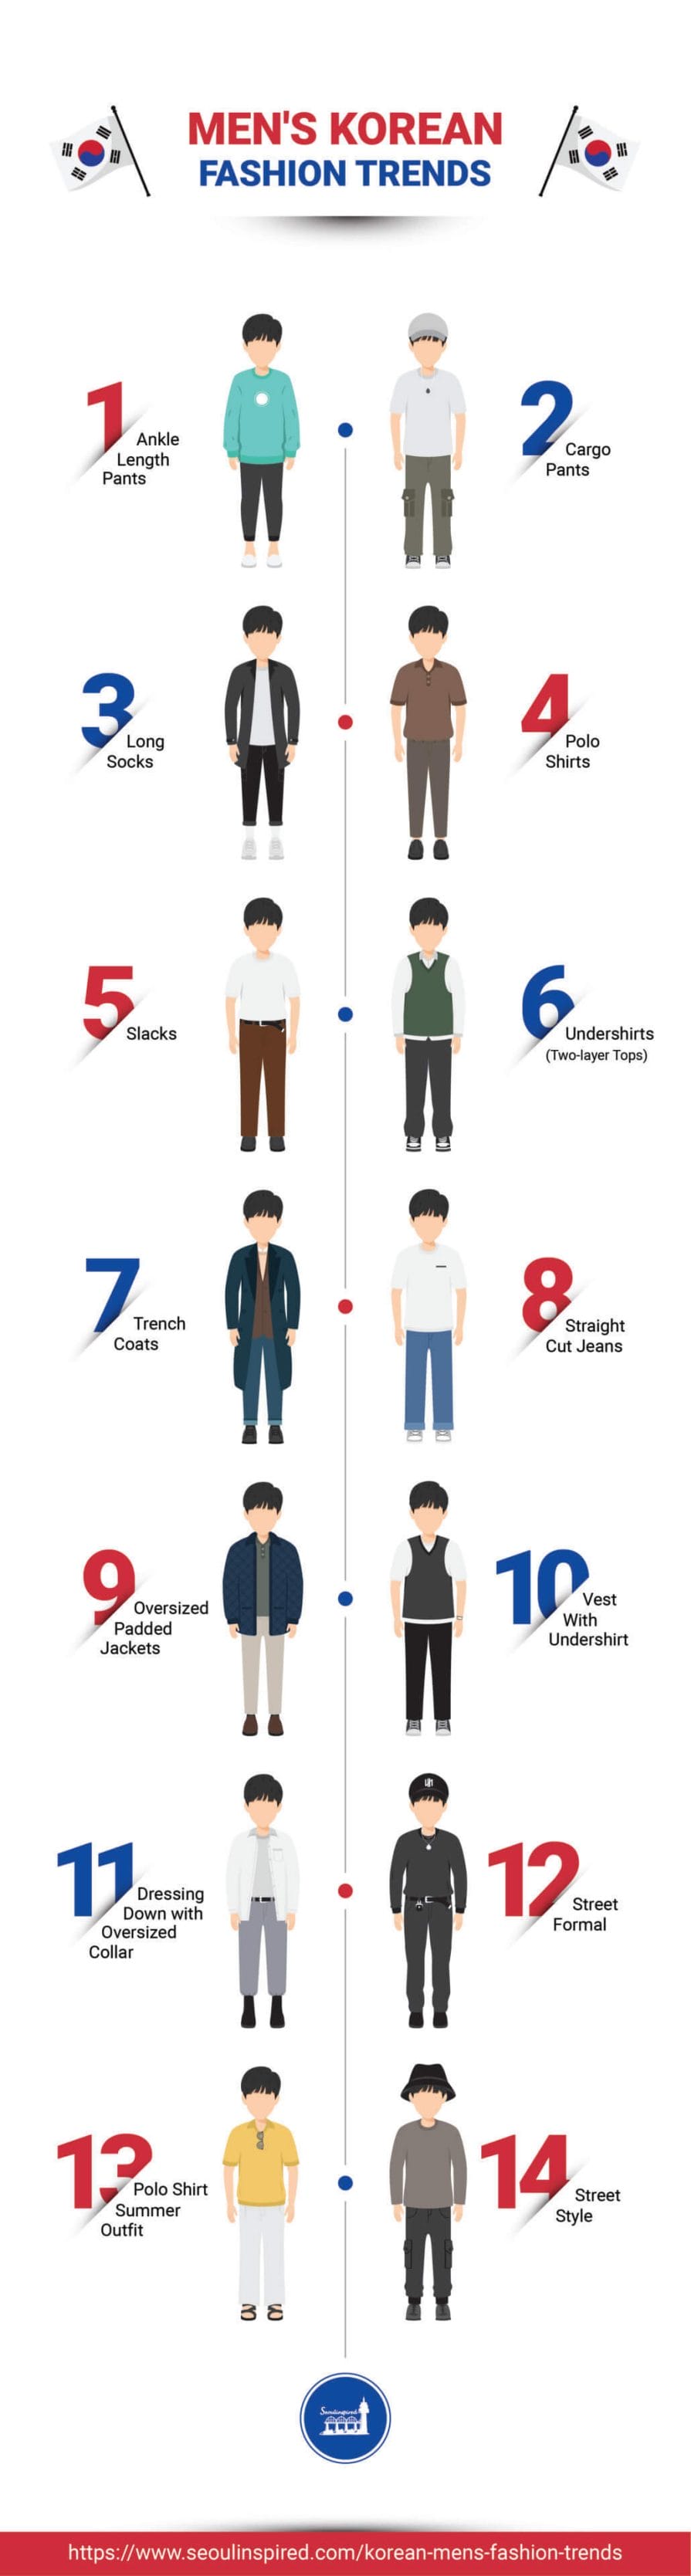 10 Must-Have Summer Wardrobe Essentials for Korean Men